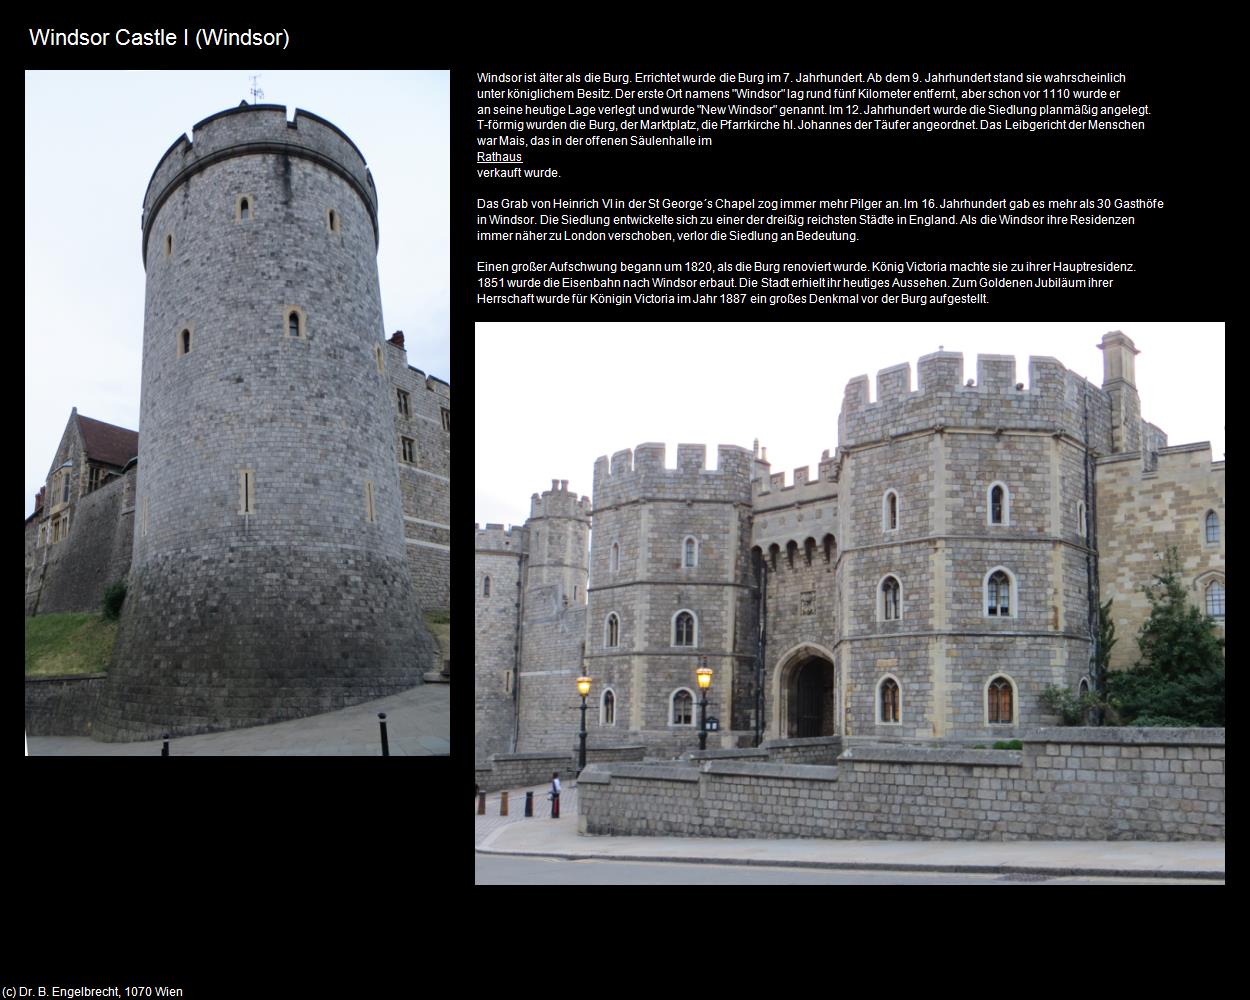 Windsor Castle I (Windsor, England) in Kulturatlas-ENGLAND und WALES(c)B.Engelbrecht